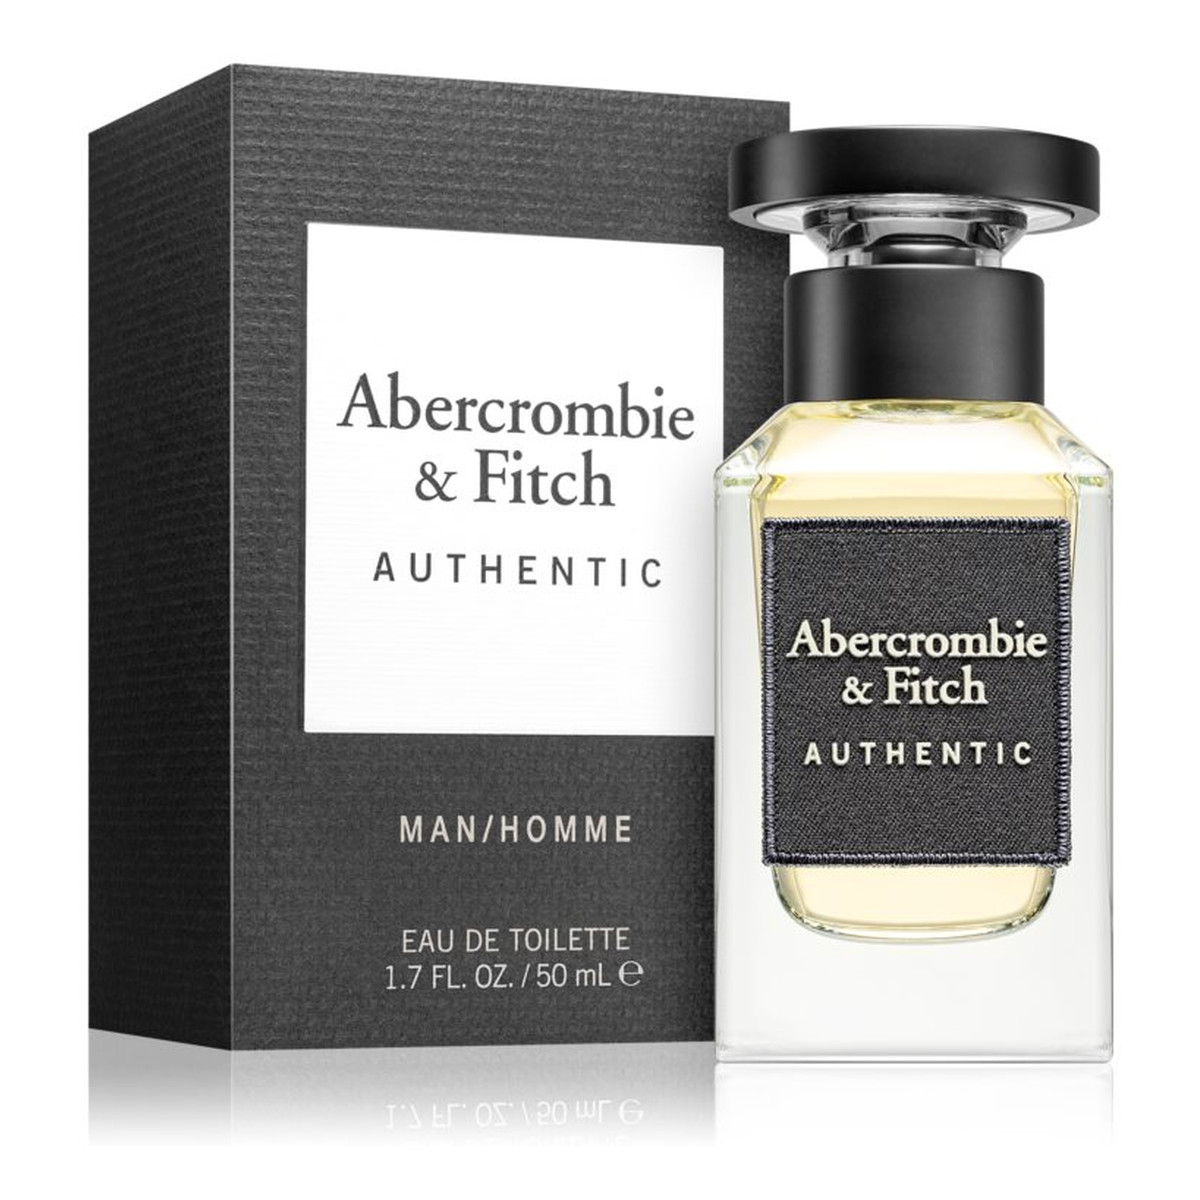 Abercrombie & Fitch Authentic Woda toaletowa 50ml